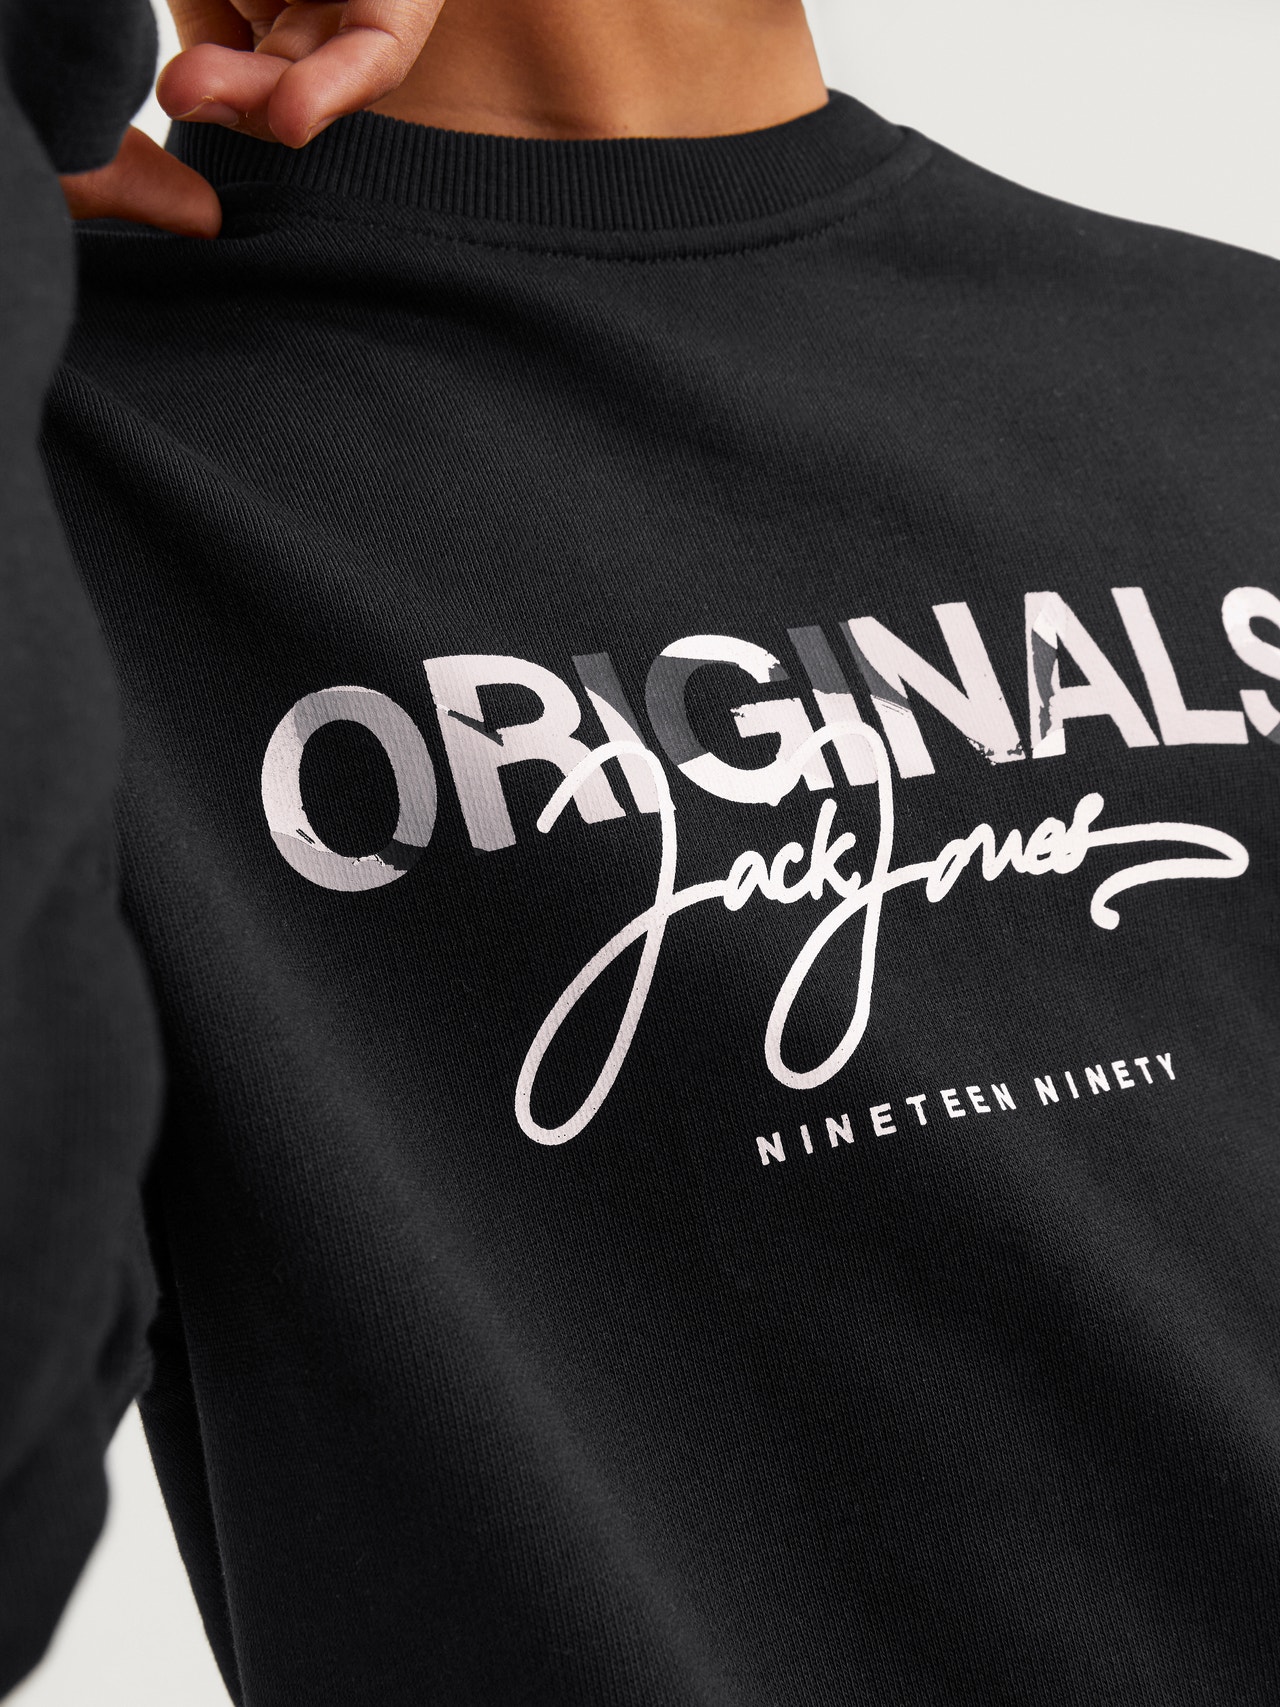 Jack & Jones Printet Sweatshirt med rund hals Til drenge -Black - 12257604